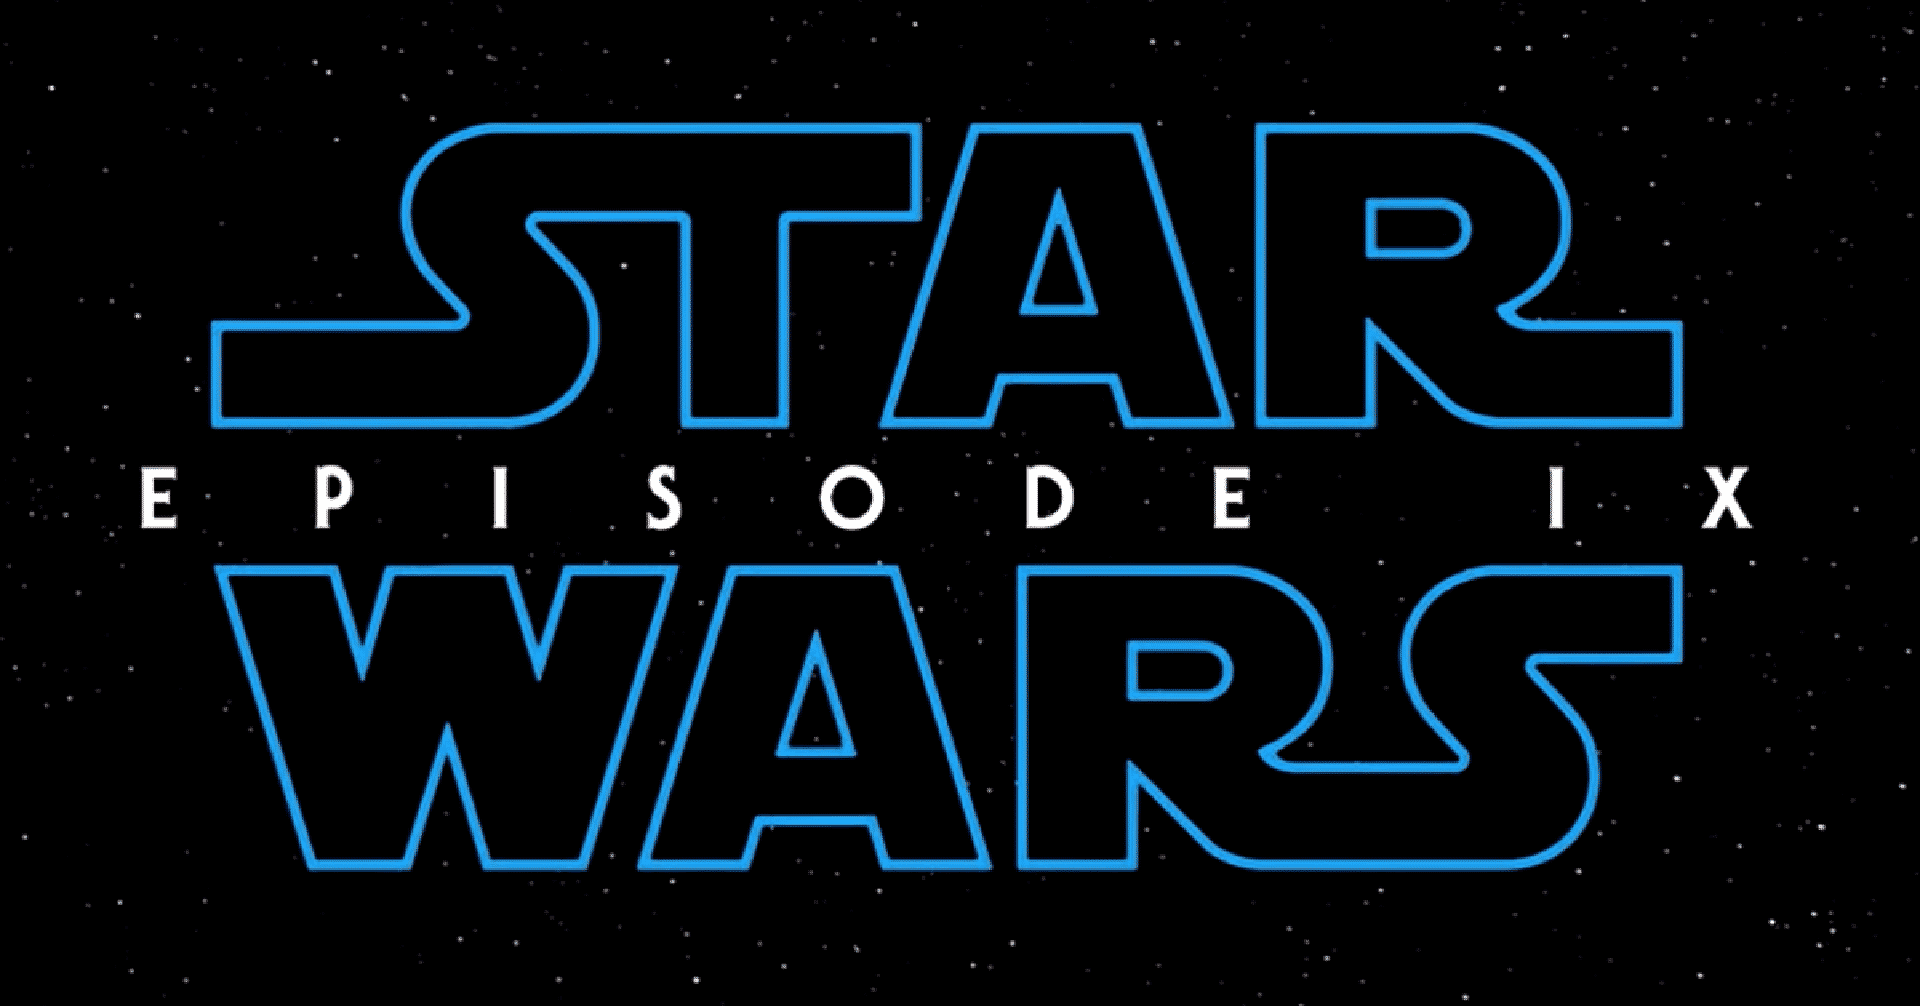 Star Wars: L’Ascesa di Skywalker – svelato il titolo italiano allo Star Wars Day